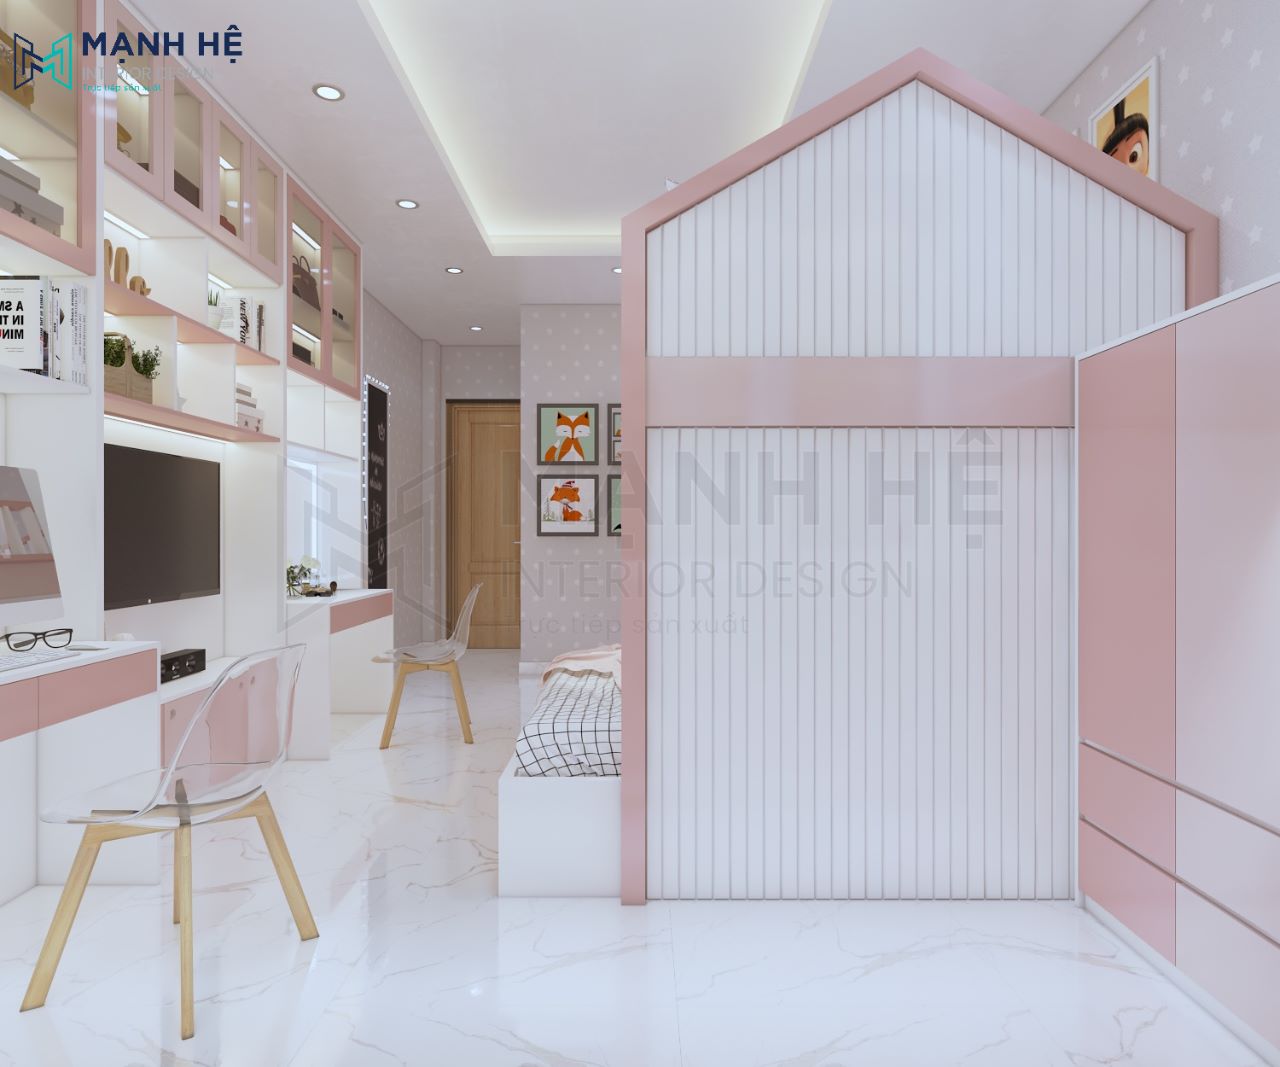 Thiết kế nội thất phòng ngủ chung cư màu hồng cho bé gái 10m2